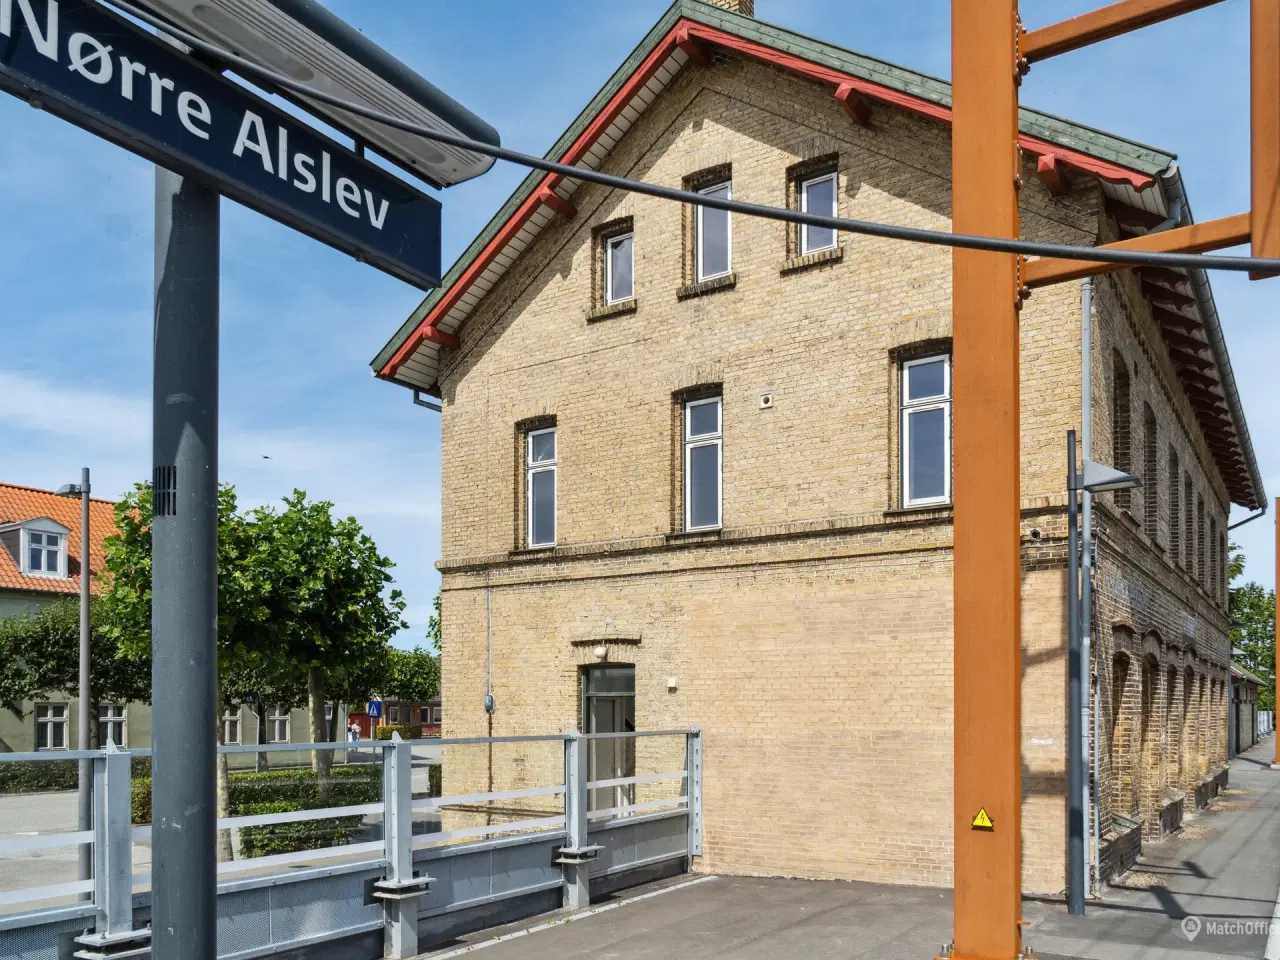 Billede 10 - Nyt liv på Nørre Alslev station.; har du ideen?